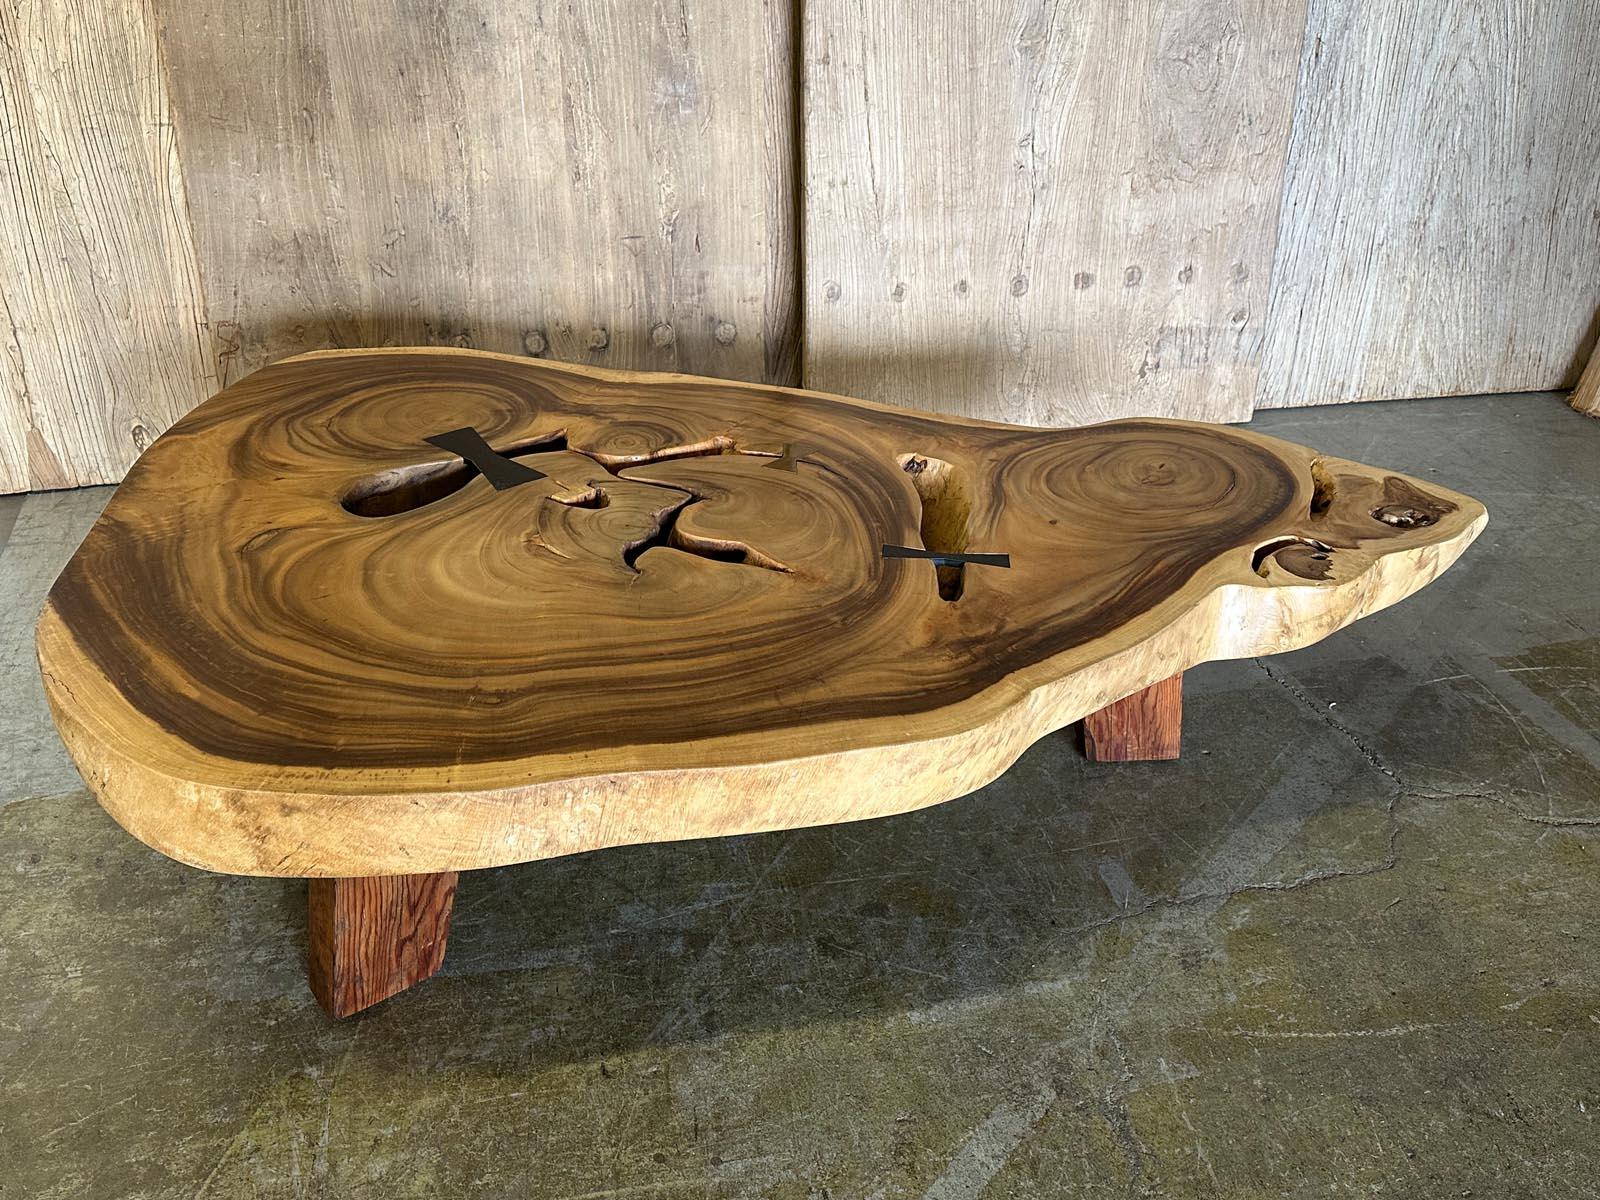 Cette table basse est constituée d'une plaque de forme libre en bois d'Albezia qui présente une gamme de couleurs et de tons magnifiques. Nous avons ajouté un mariposa en fer, un papillon. Le plateau très épais et la construction solide en font une